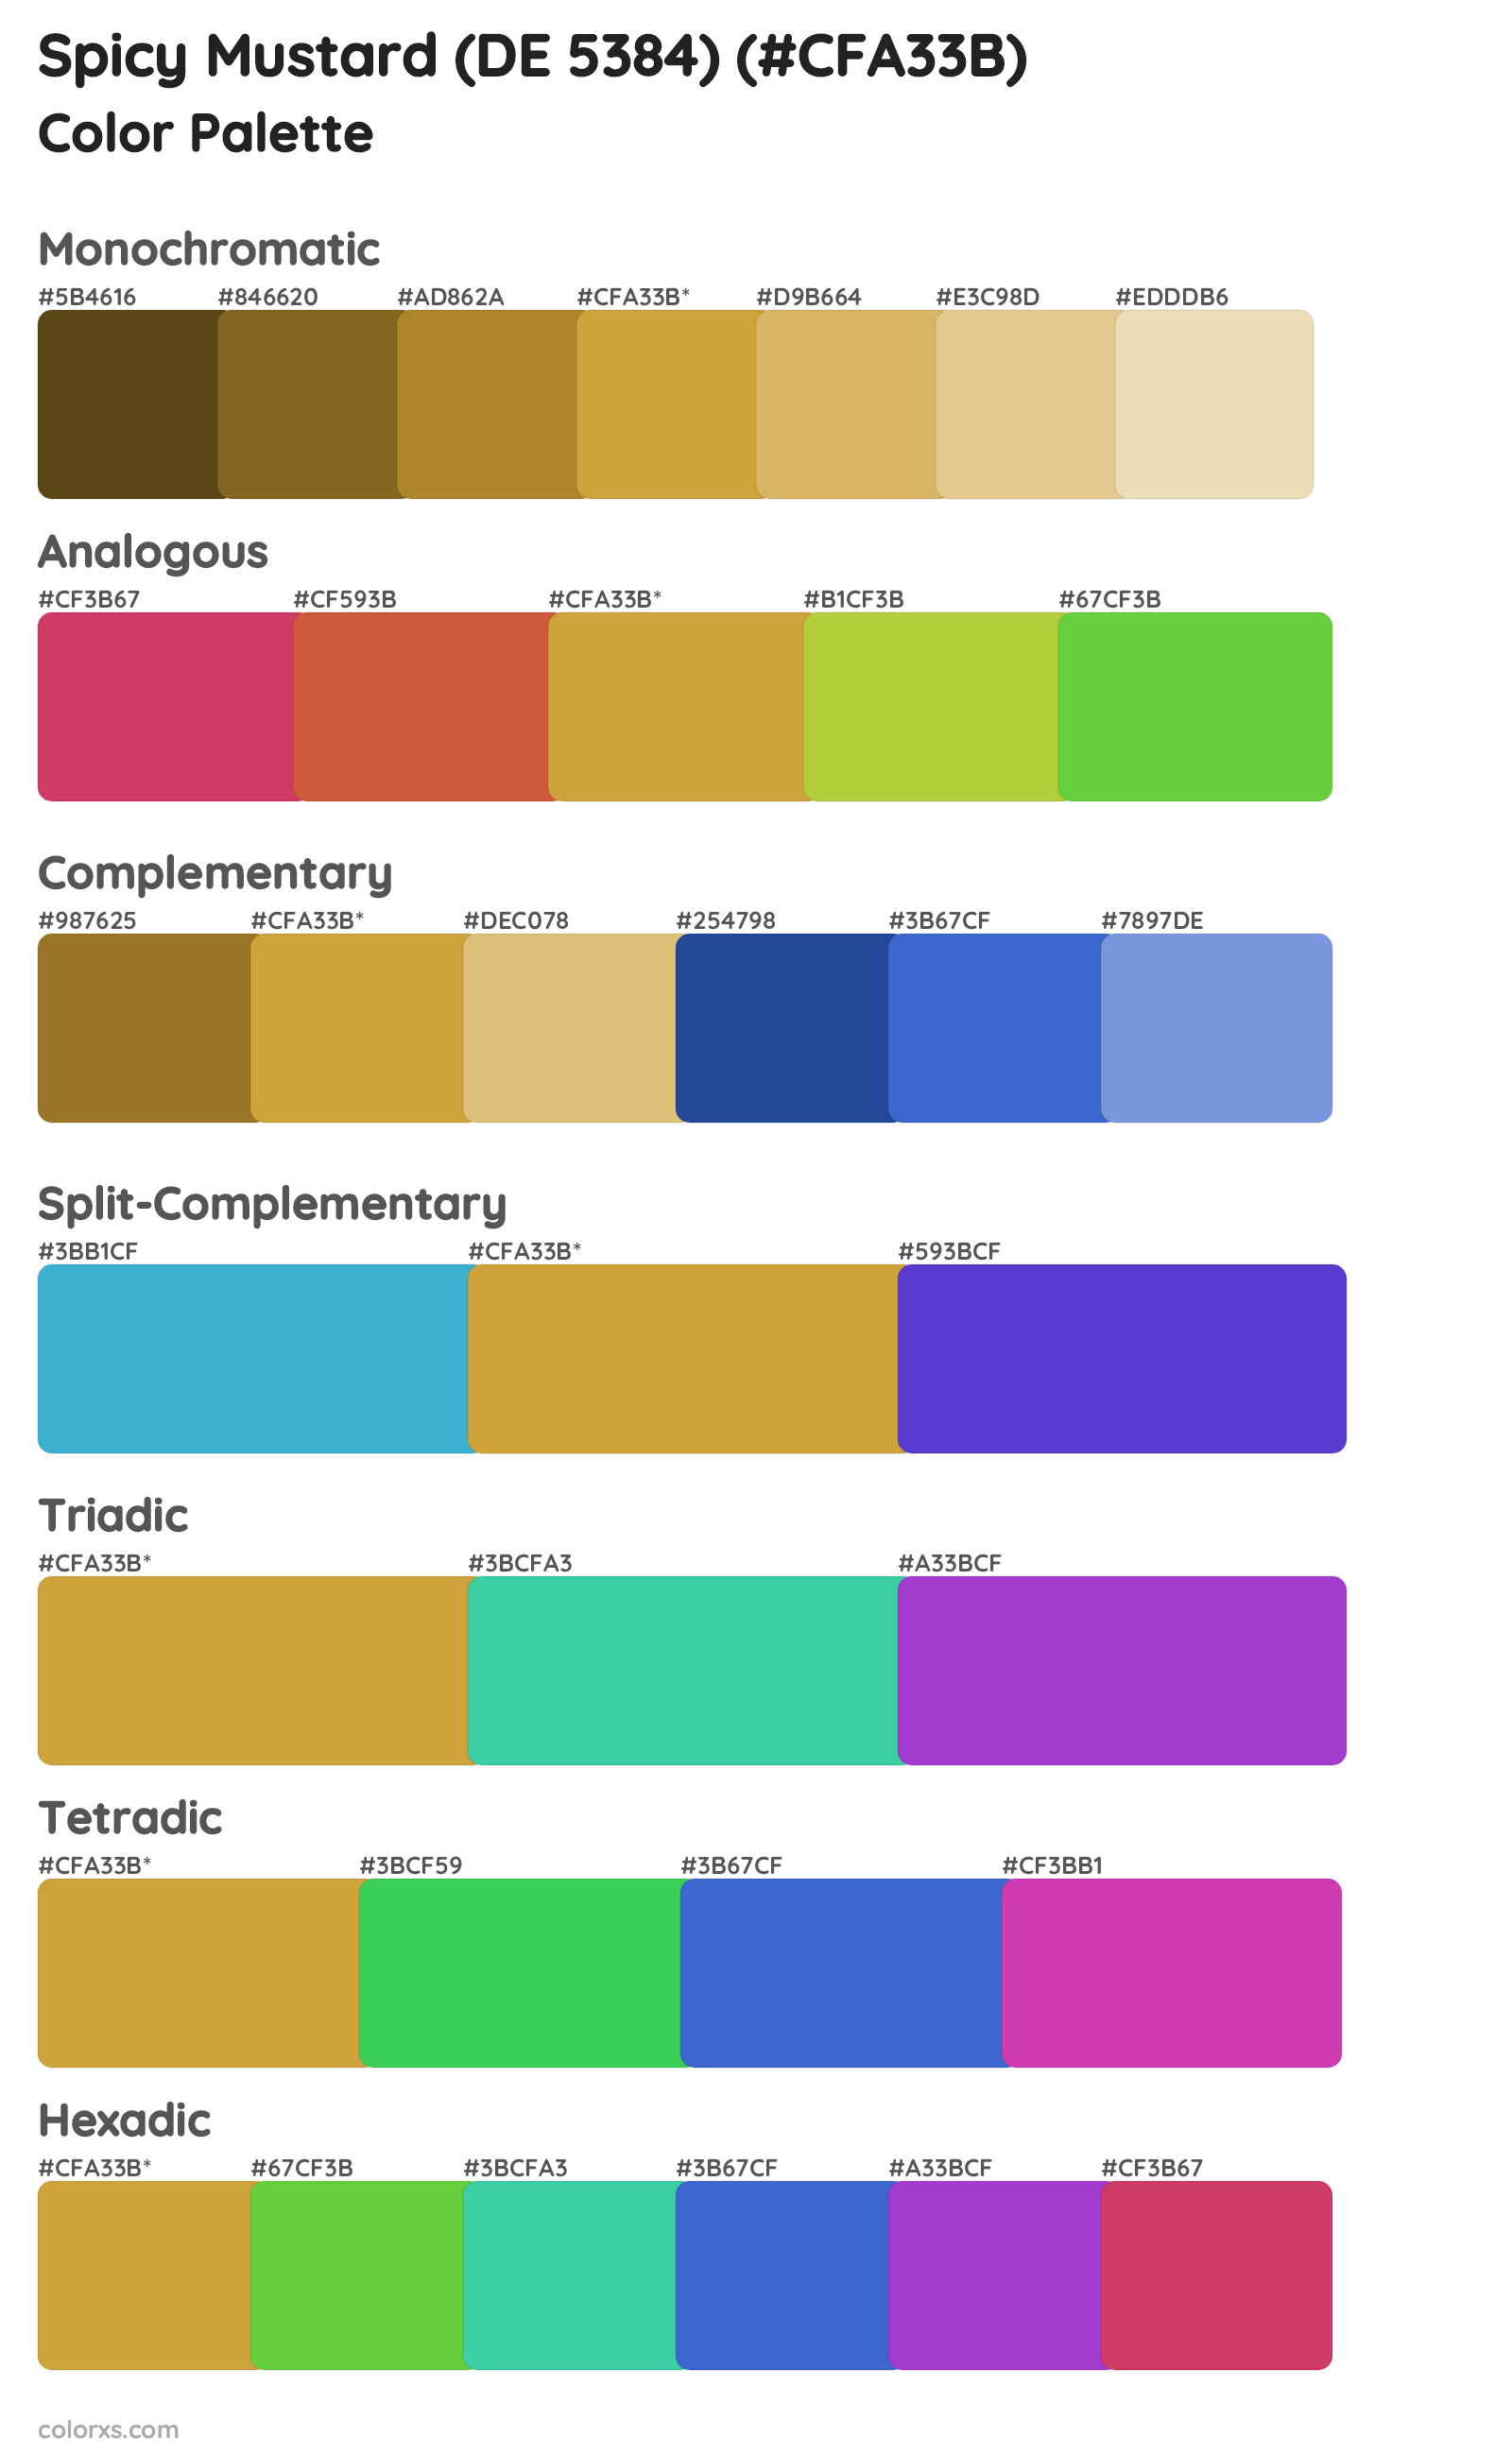 Spicy Mustard (DE 5384) Color Scheme Palettes